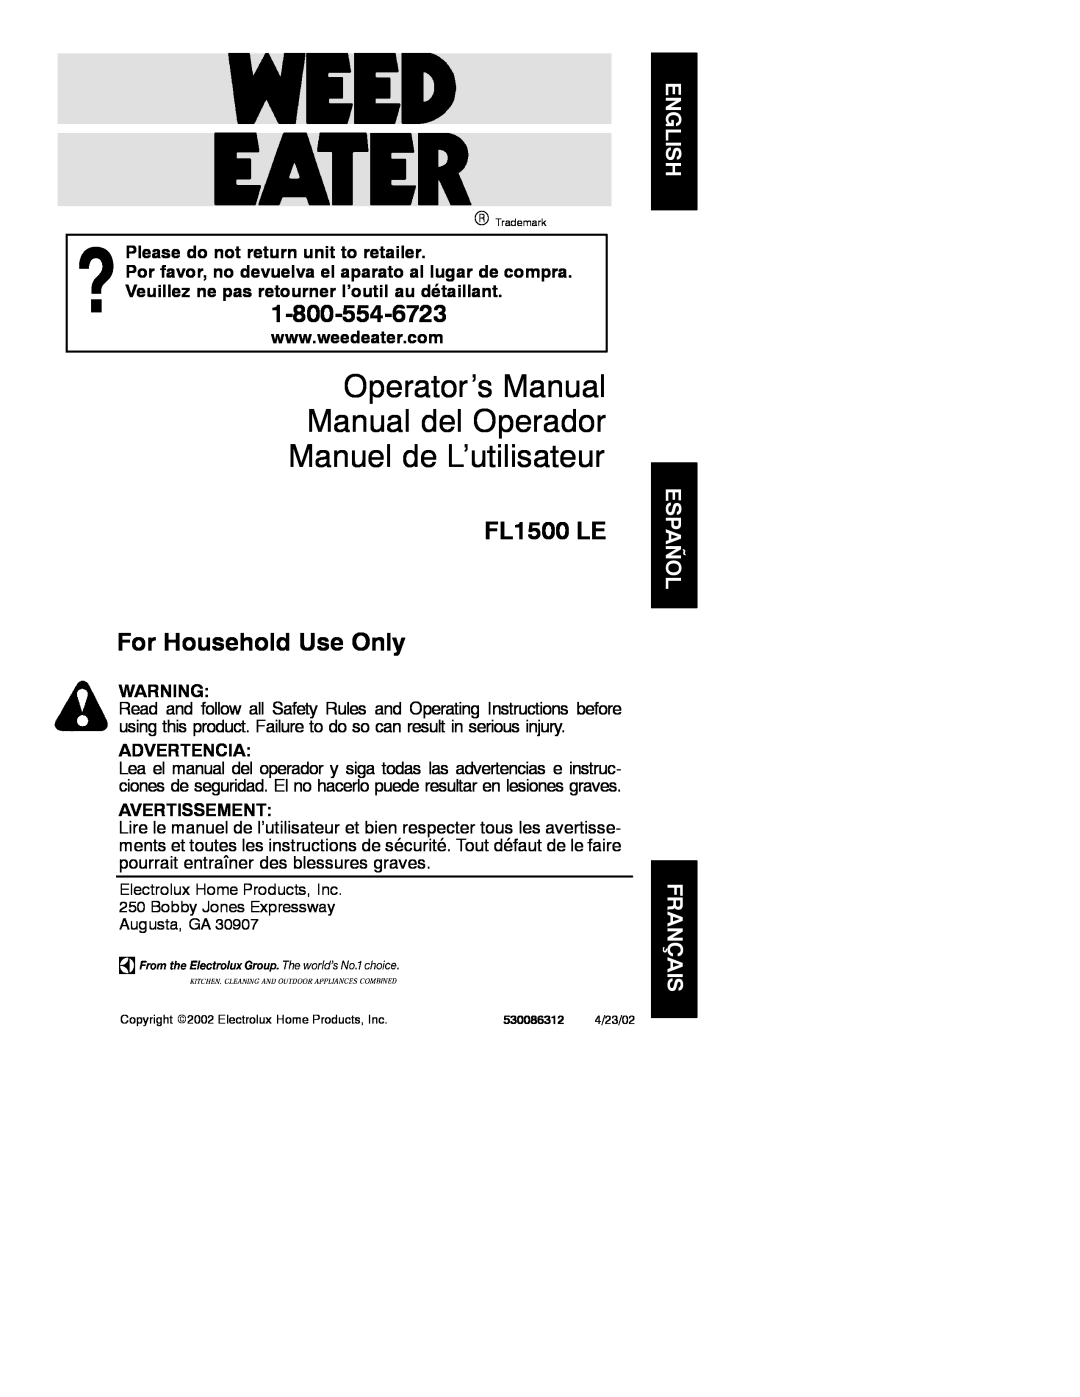 Electrolux FL1500 LE manual Operator’s Manual Manual del Operador, Manuel de L’utilisateur, Advertencia, Avertissement 